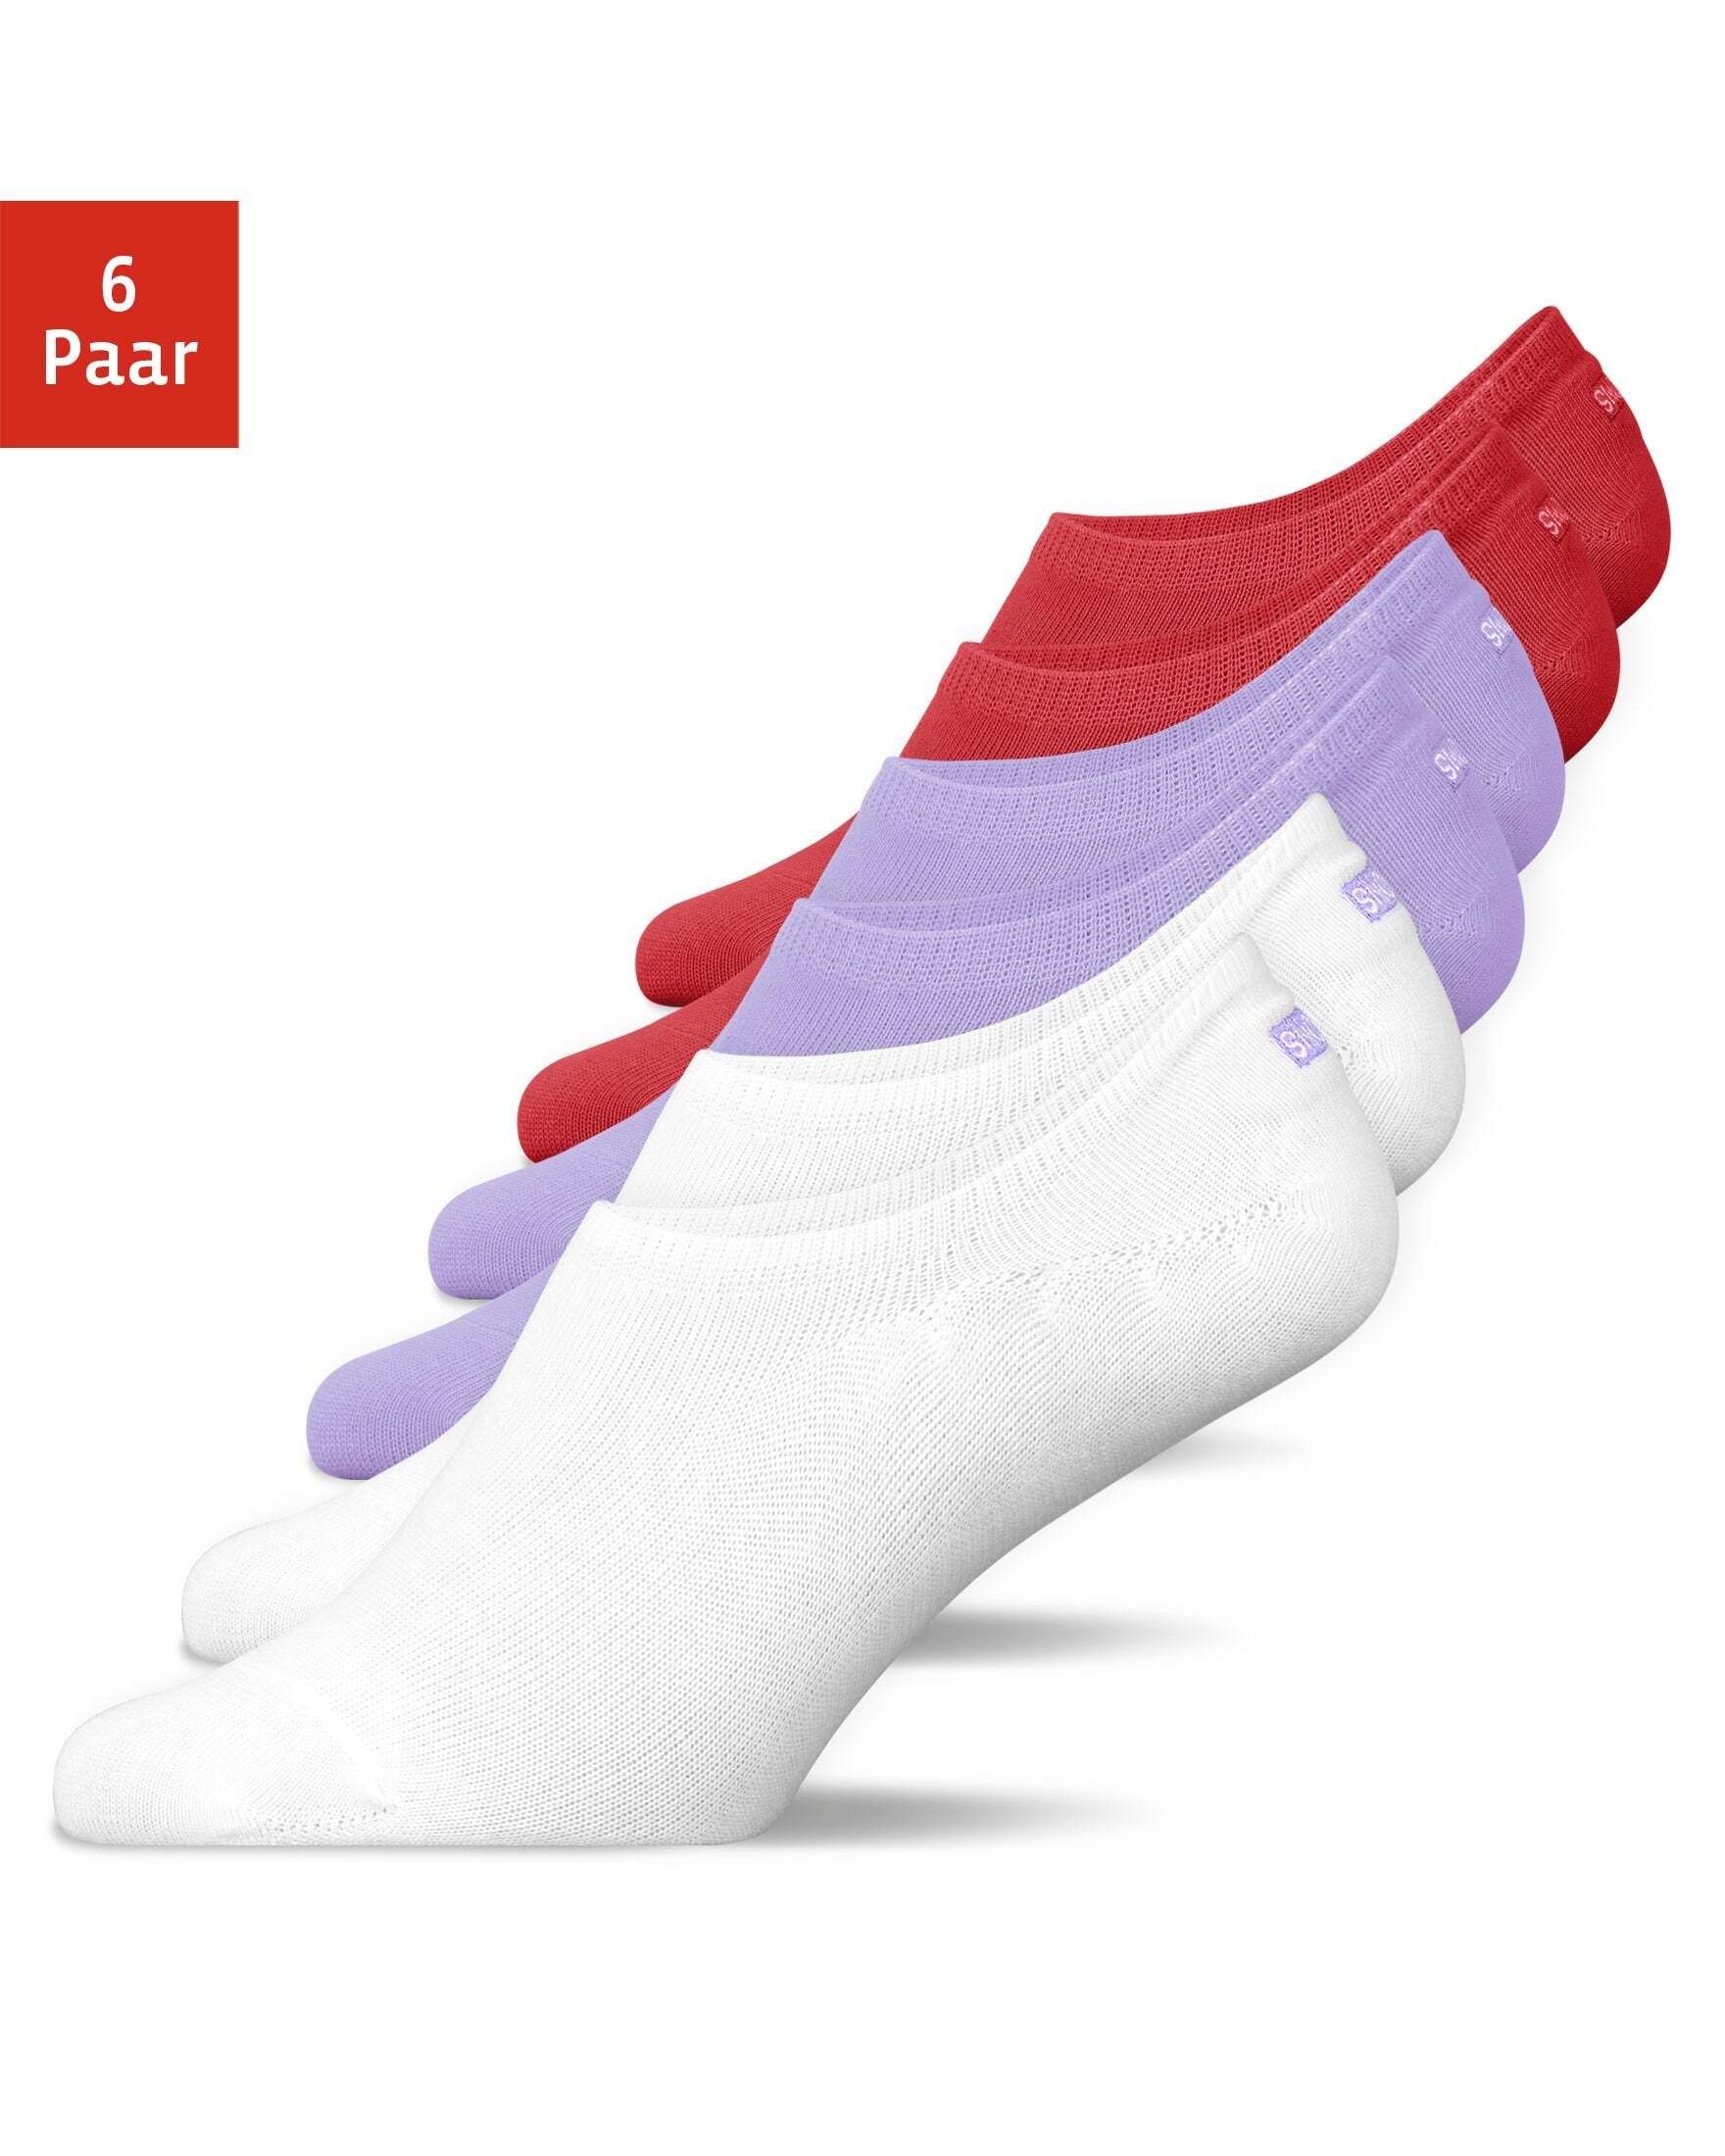 SNOCKS Füßlinge Invisible Socks Sneaker Socken Damen & Herren (6-Paar) aus Bio-Baumwolle, mit Anti-Rutsch-Pad und unsichtbar in den Schuhen